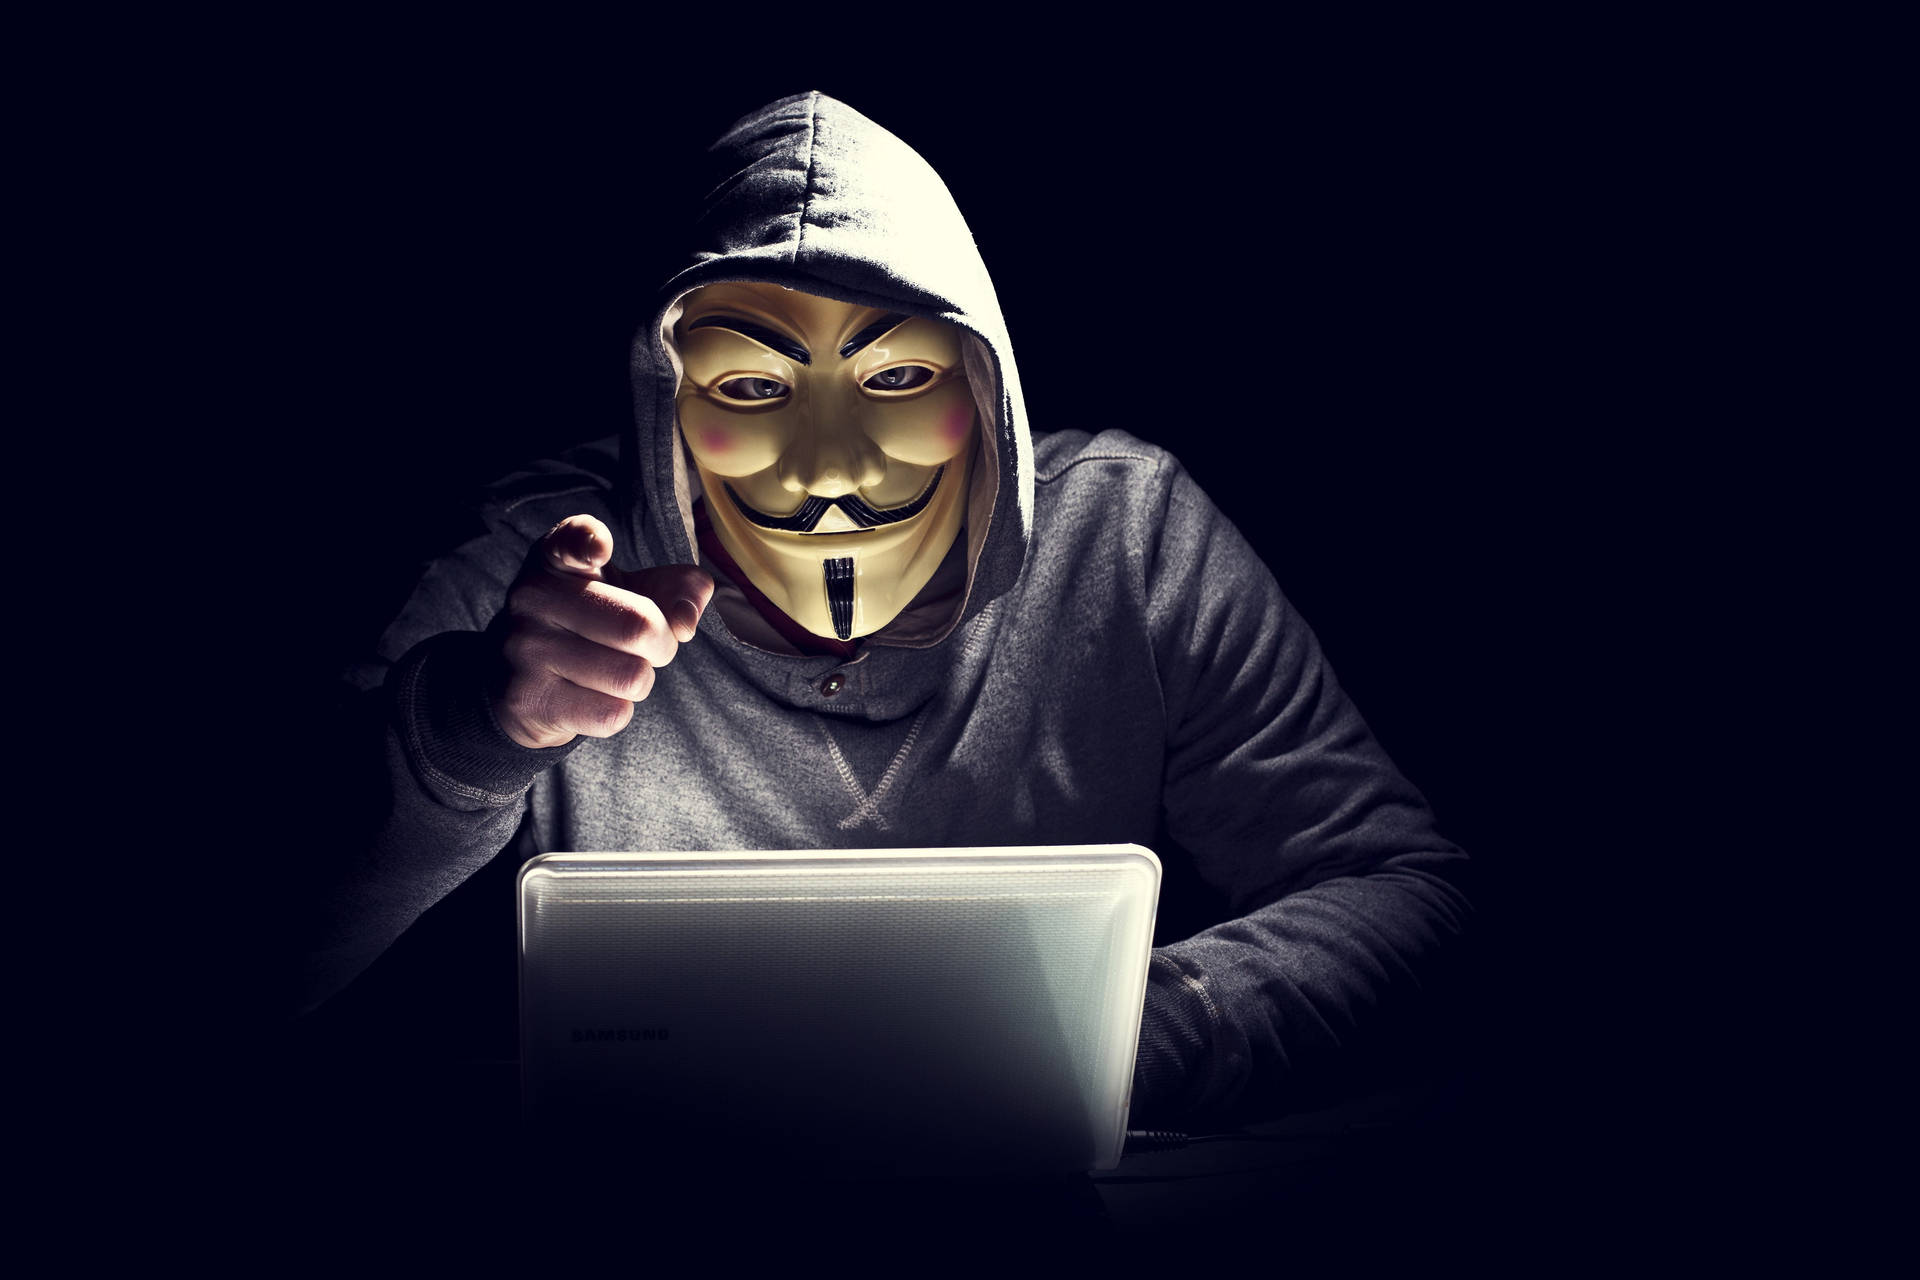 5k Hd Anonymous Hacker Wallpaper